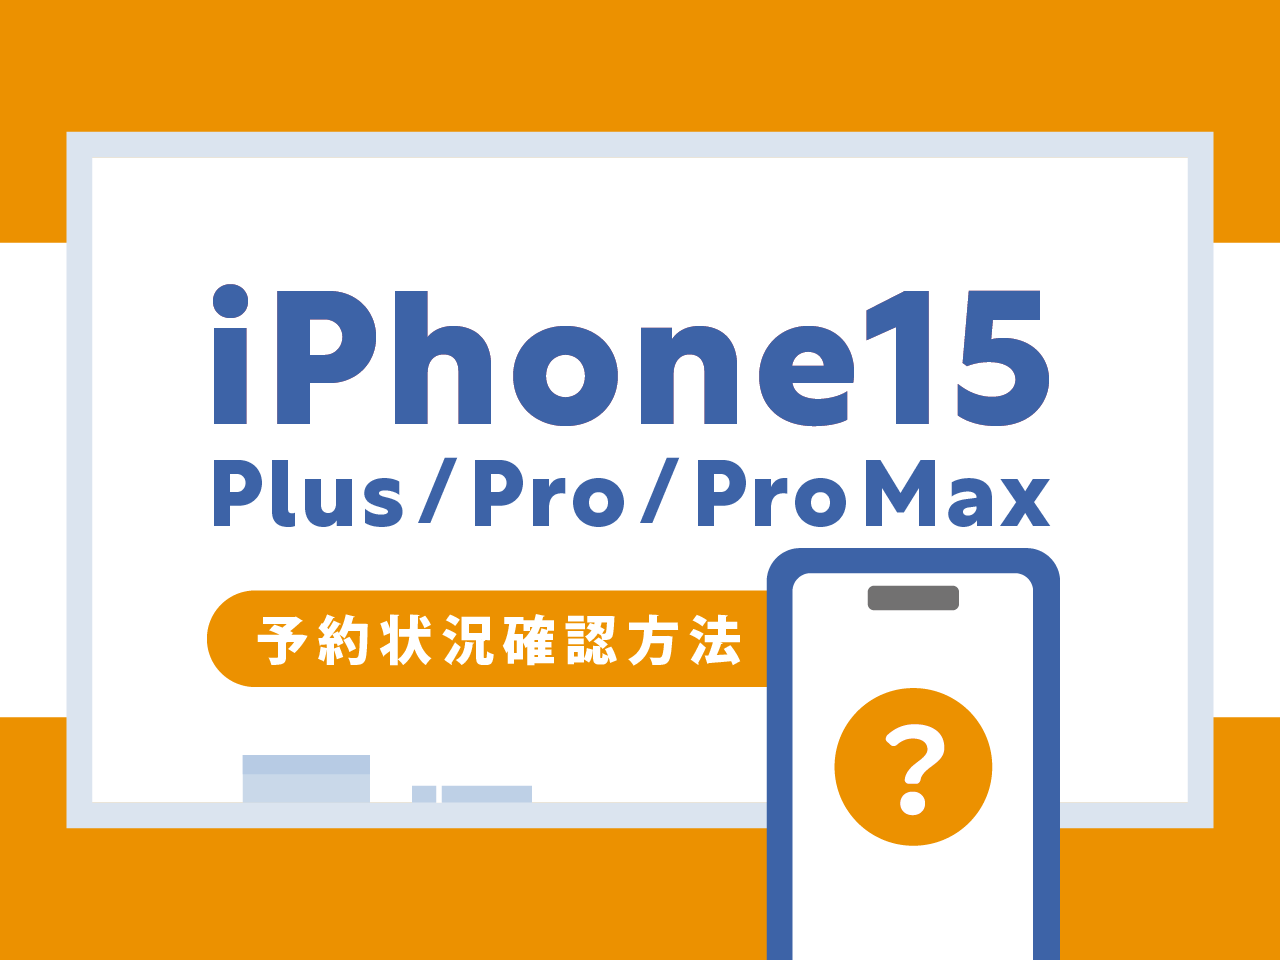 iPhone15/Plus/Pro/Pro Maxの予約状況を確認する方法